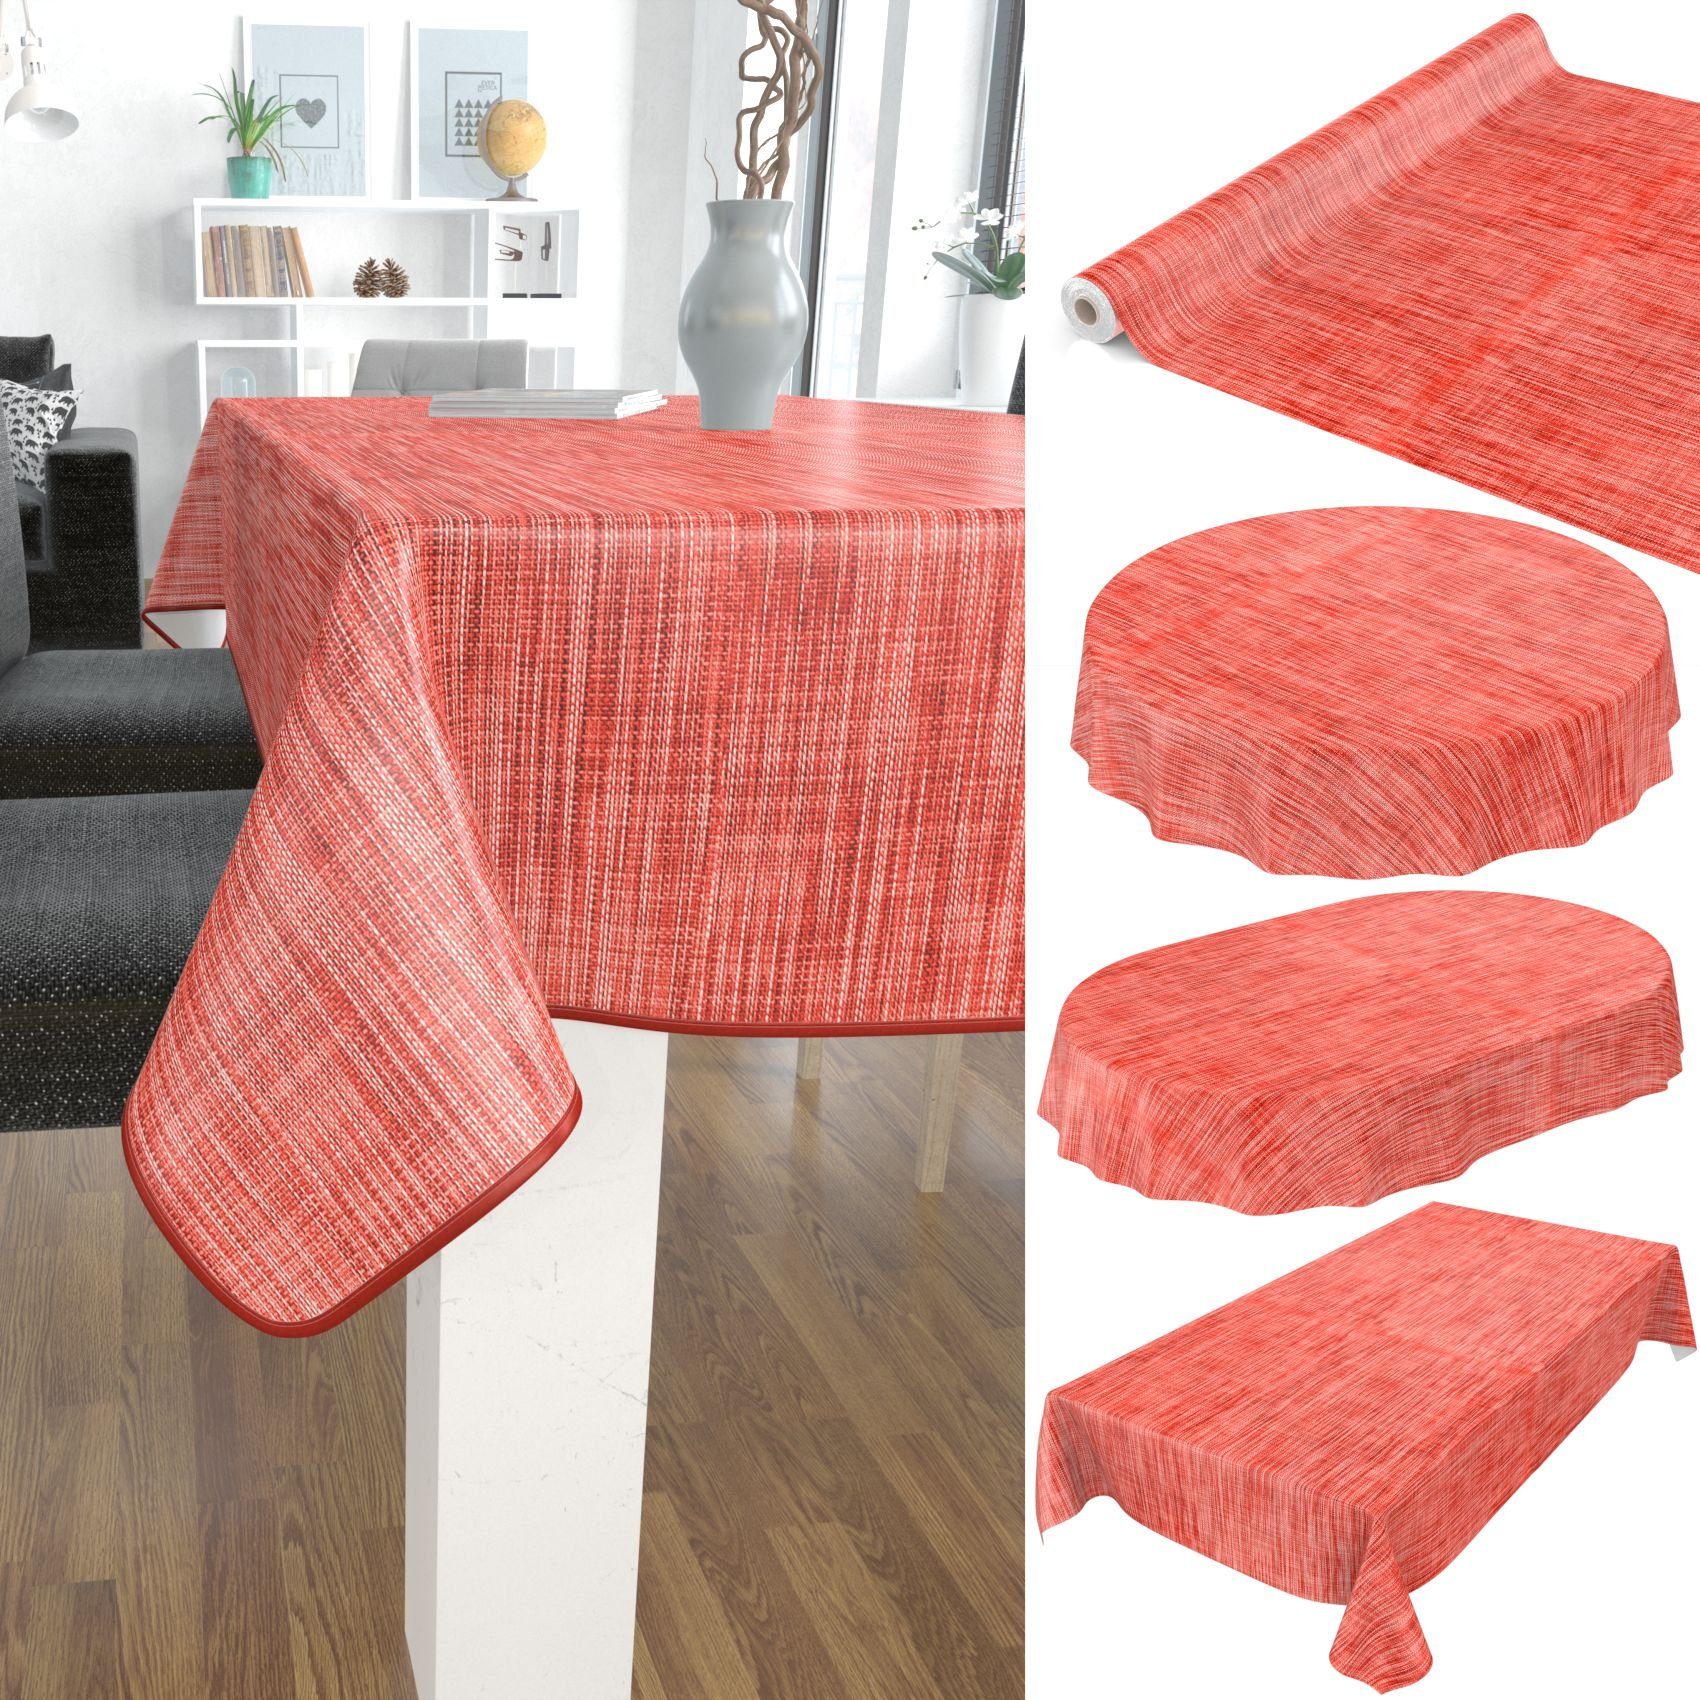 ANRO Tischdecke 140, Breite Rot Robust Tischdecke Glatt Wachstuch Einfarbig Wasserabweisend